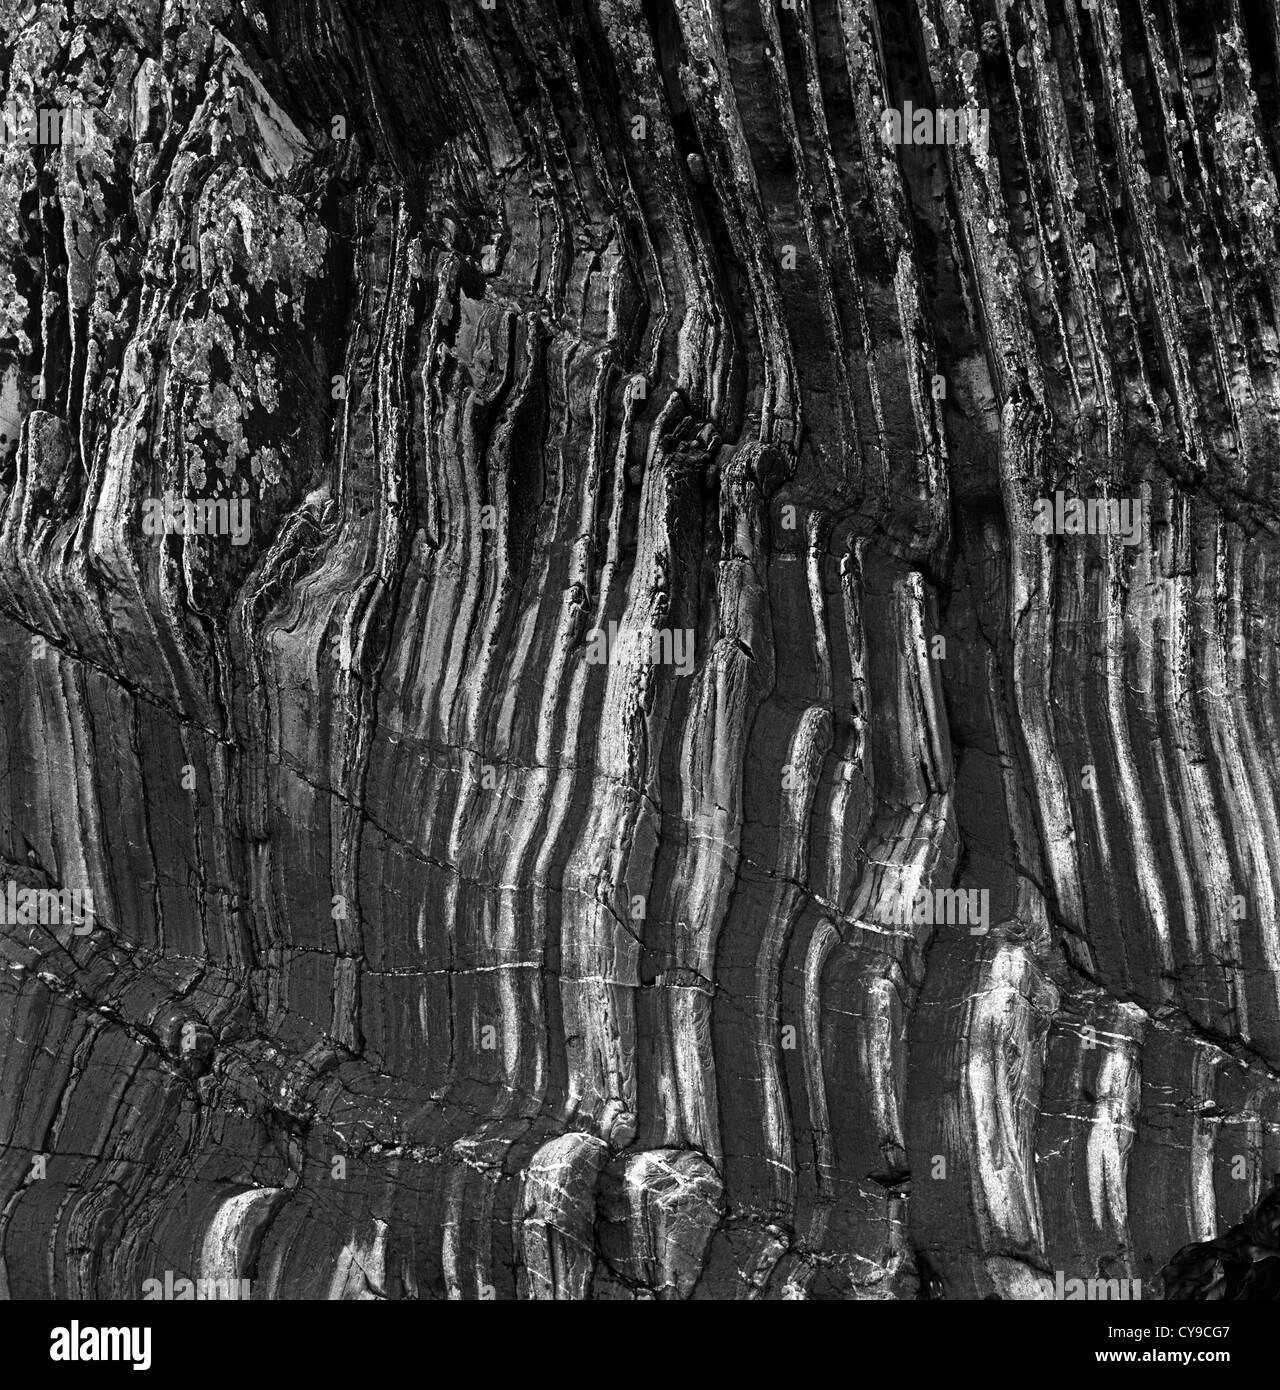 Rocas acanaladas, Kearney, Co Down, Irlanda del Norte Foto de stock